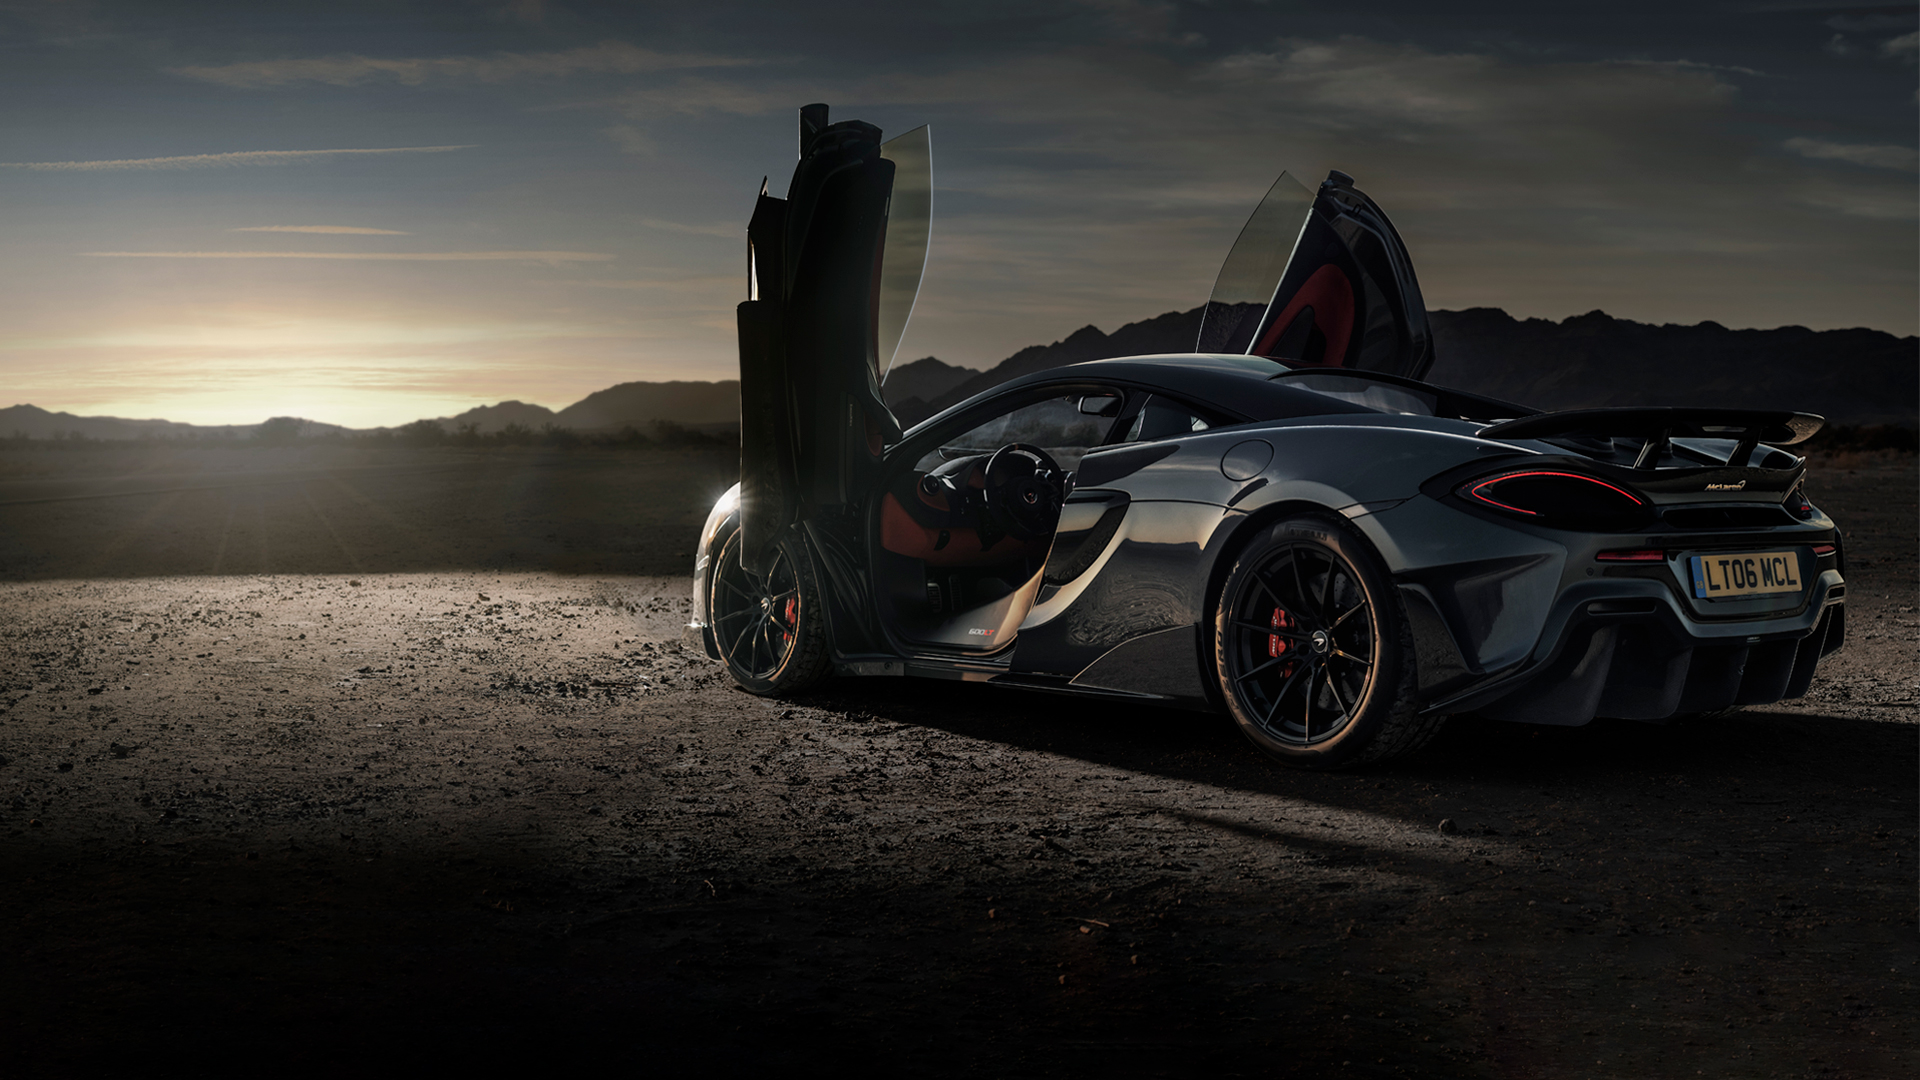 Siêu xe McLaren là biểu tượng chất lượng và sự sang trọng. Bạn đang tìm kiếm trải nghiệm tuyệt vời về tốc độ và thể hiện cá tính của riêng mình? McLaren chính là lựa chọn tuyệt vời nhất cho bạn!